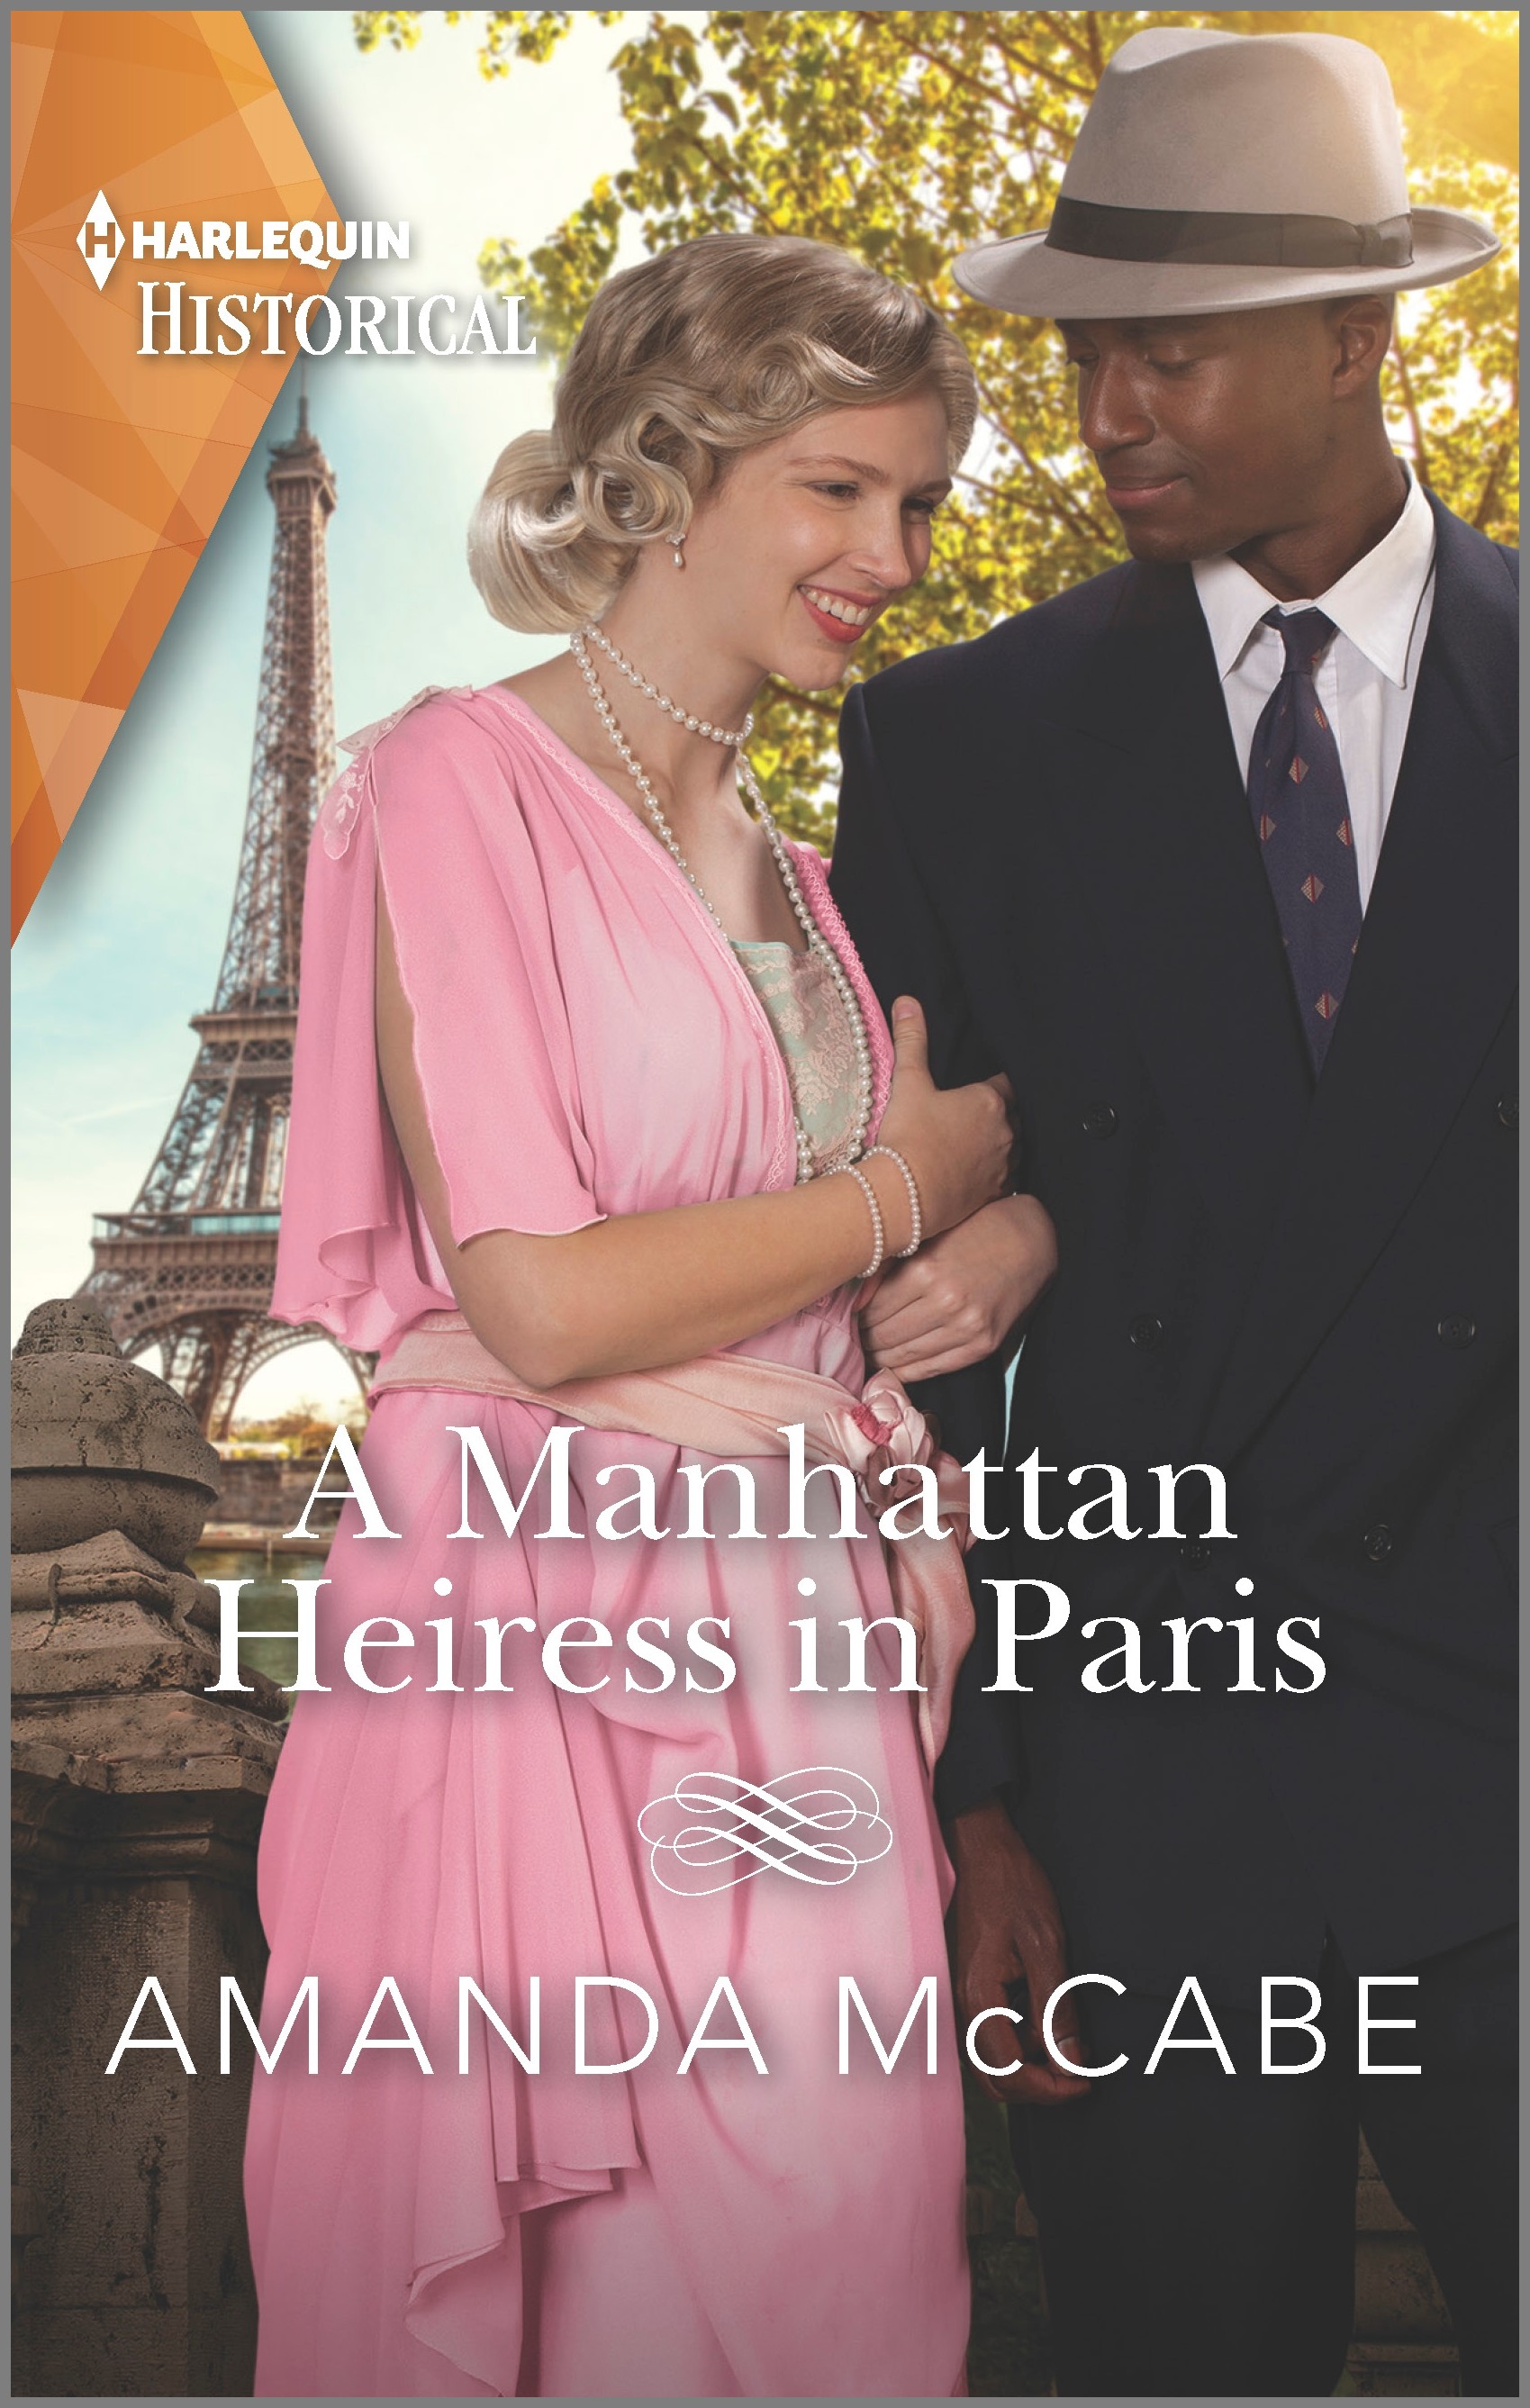 A MANHATTEN HEIRESS IN PARIS by Amanda McCabe